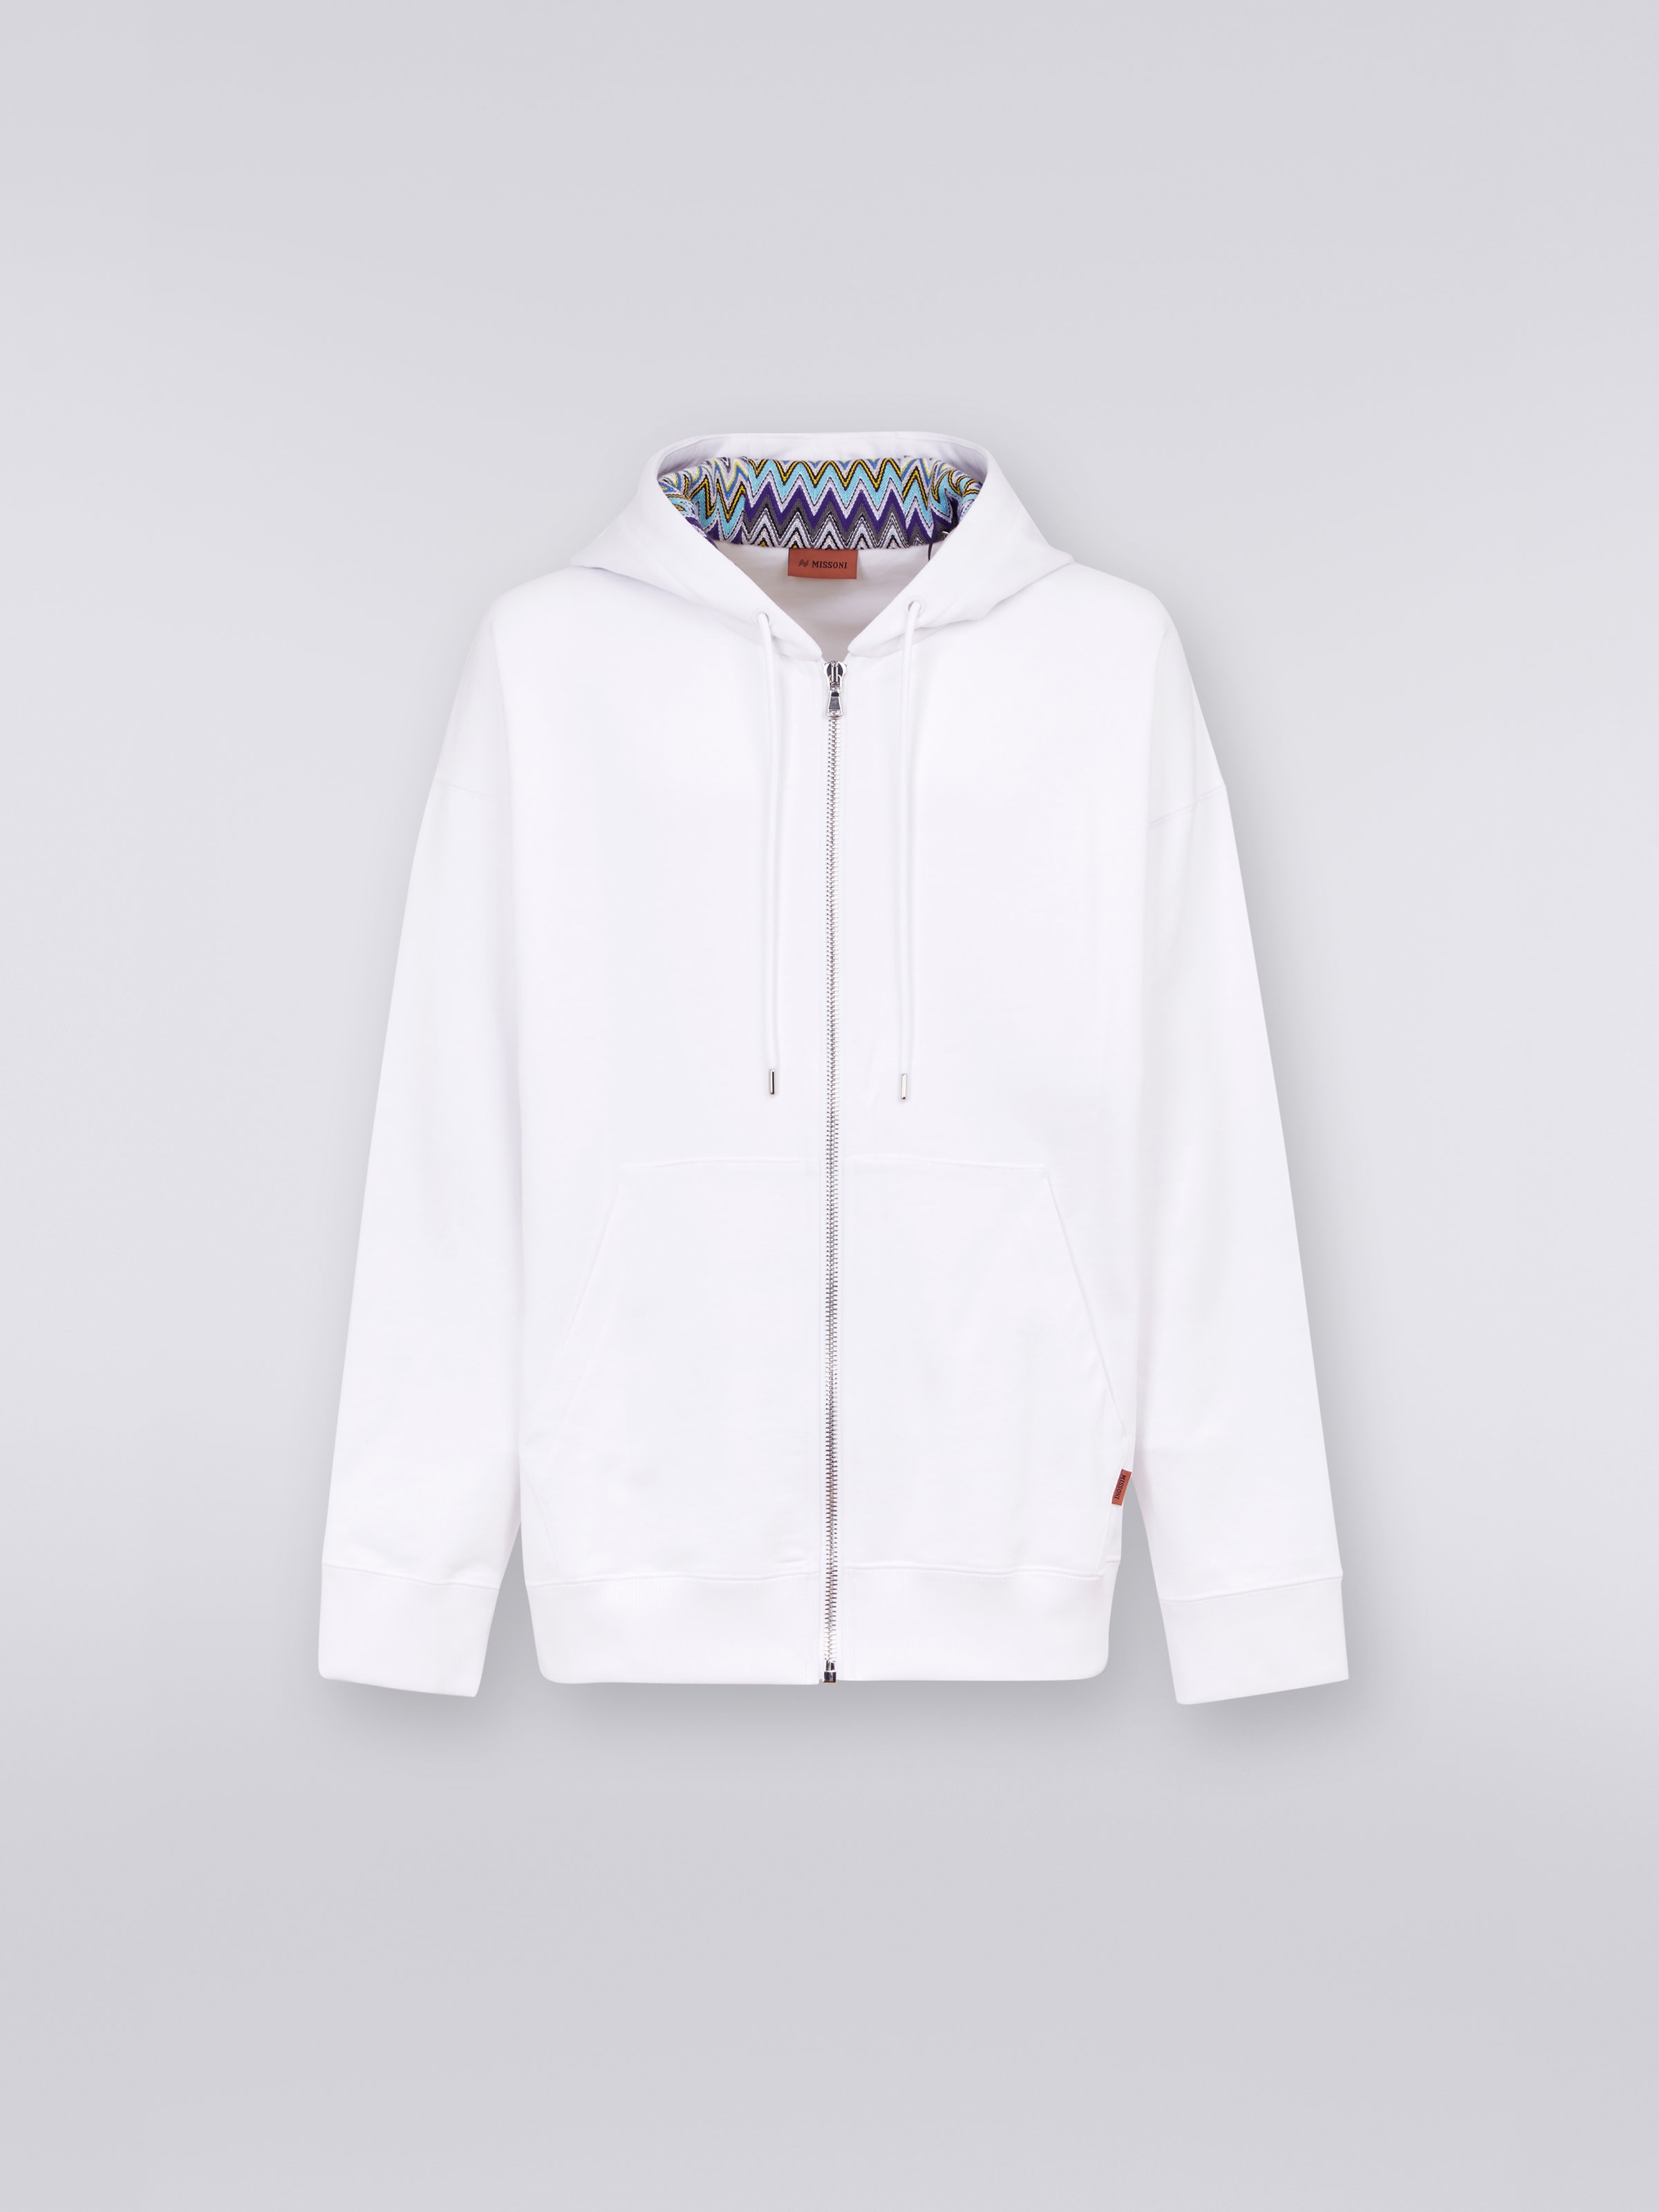 Sudadera de algodón con capucha, cremallera y detalles de punto multicolor, Blanco  - 0